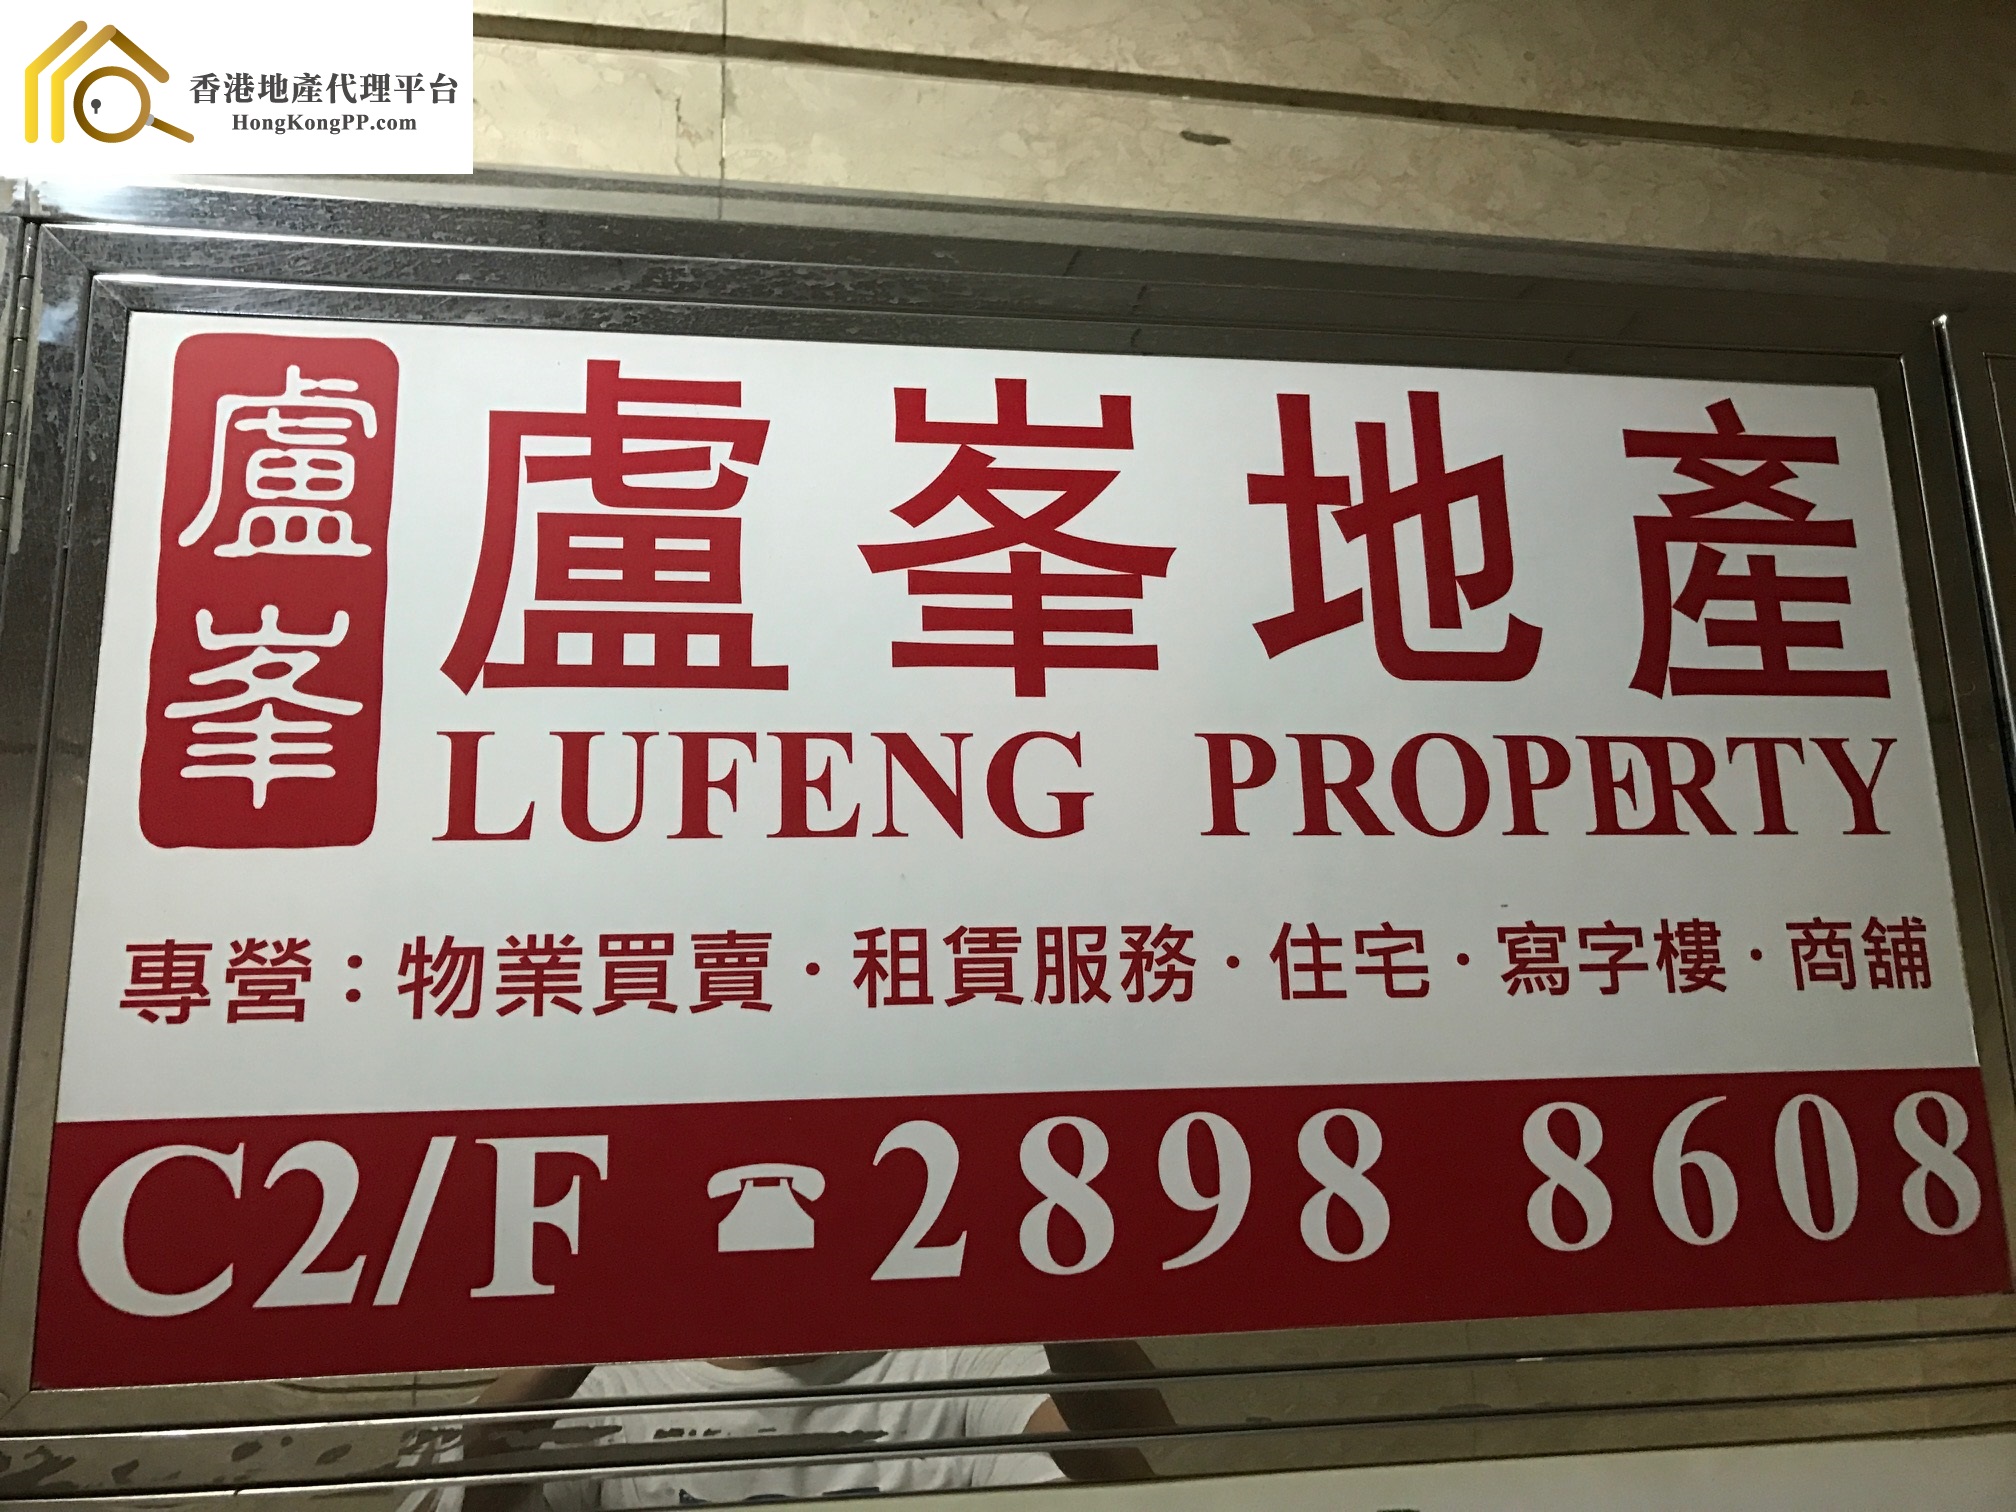 地產代理公司: 盧峯地產 Lufeng Property